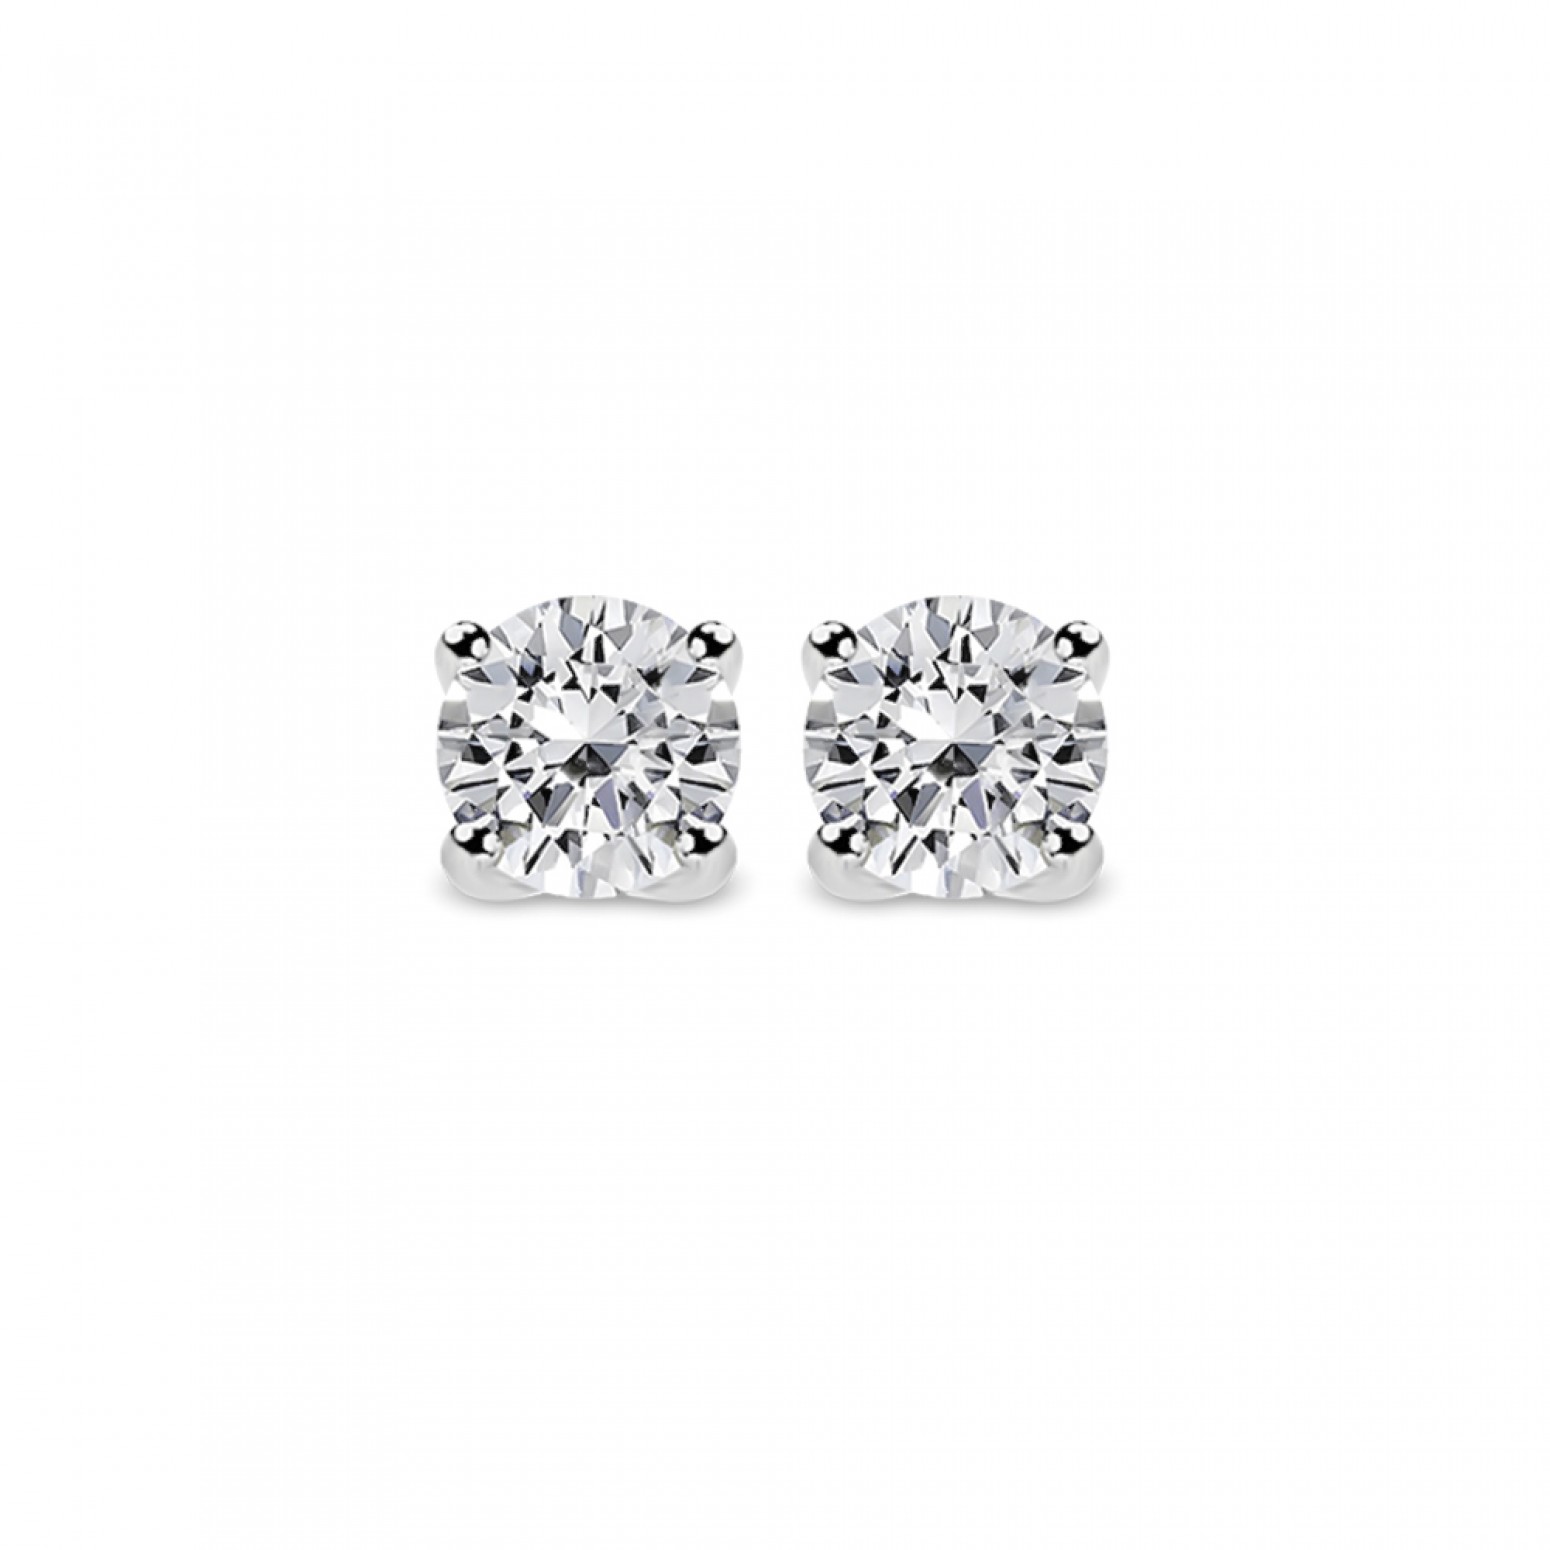 Solitaire earrings 18K white gold with diamonds 0.47ct, VS2, G from IGL sk3375 EARRINGS Κοσμηματα - chrilia.gr